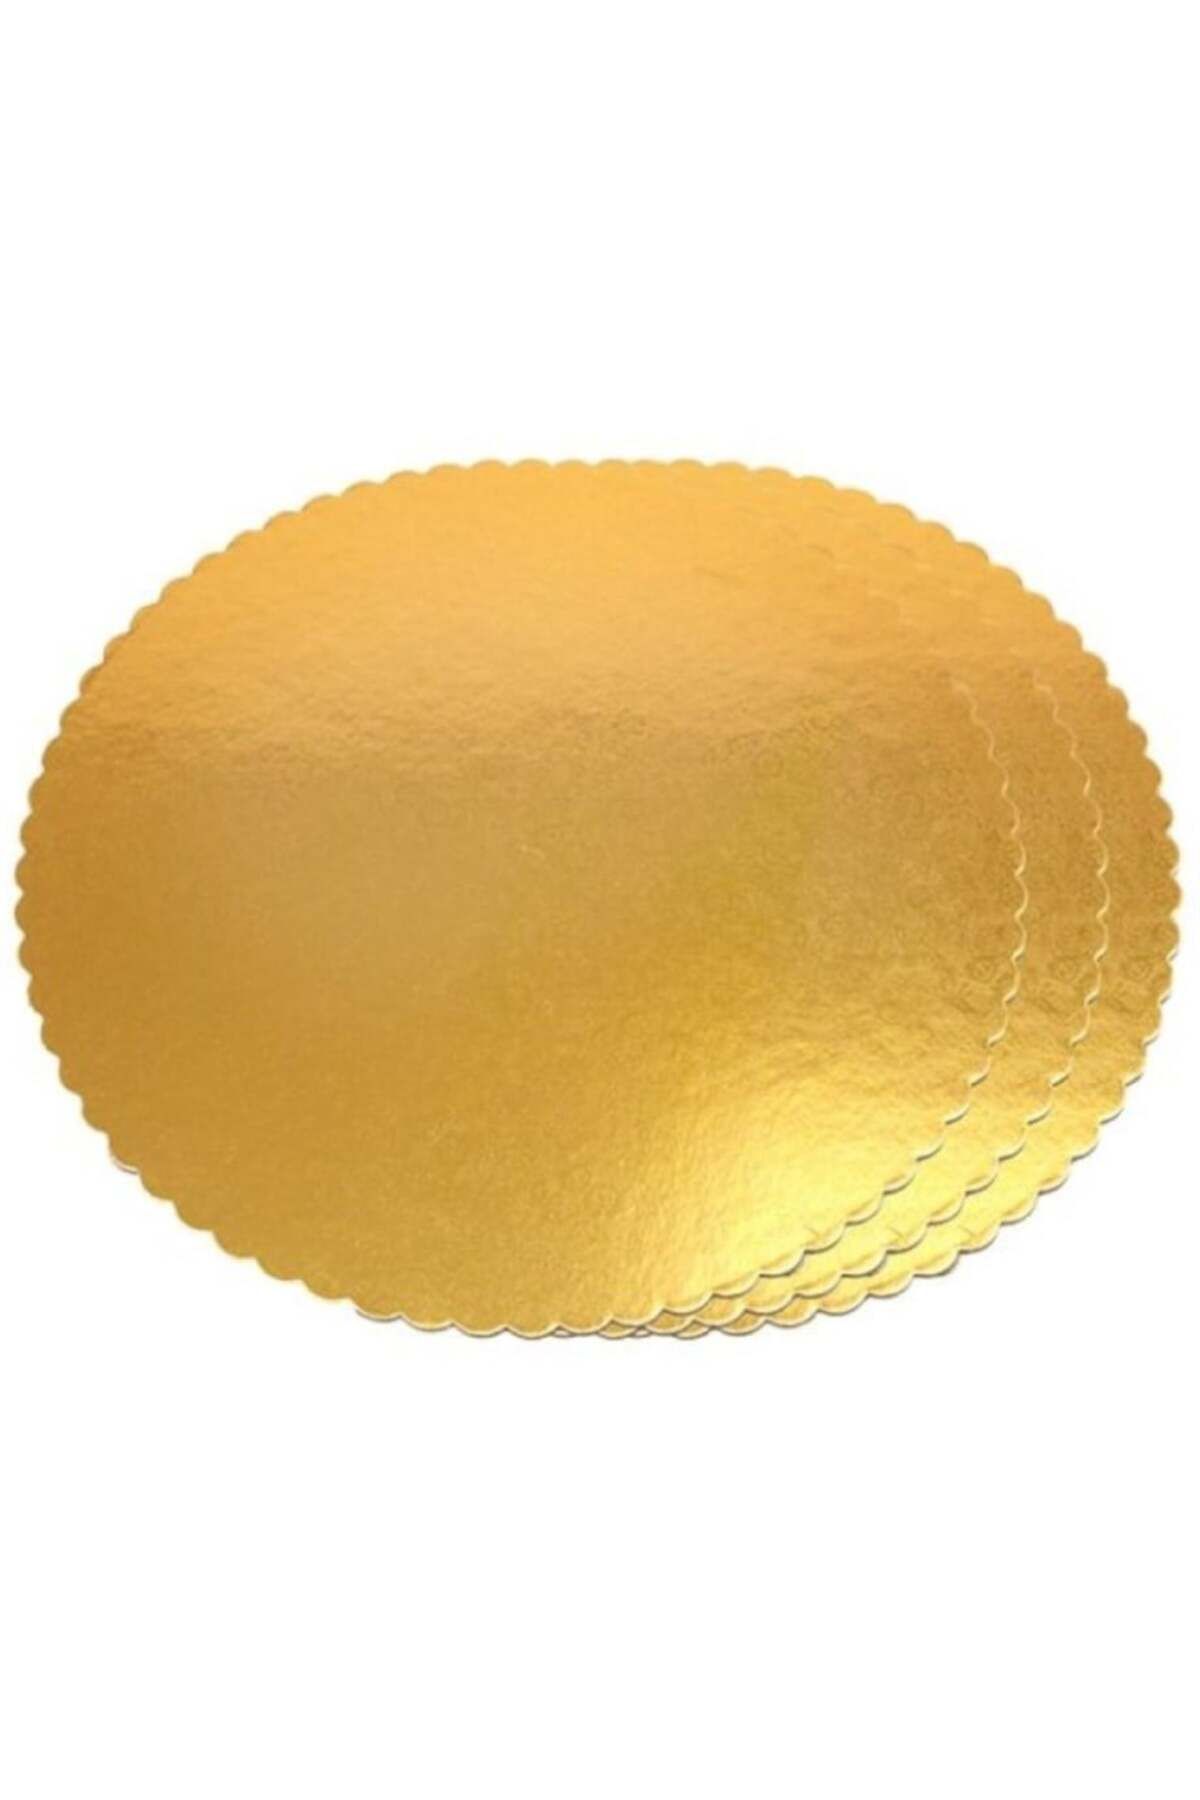 Adana Pasta Malzemeleri Mendil Gold Kalın 32 cm